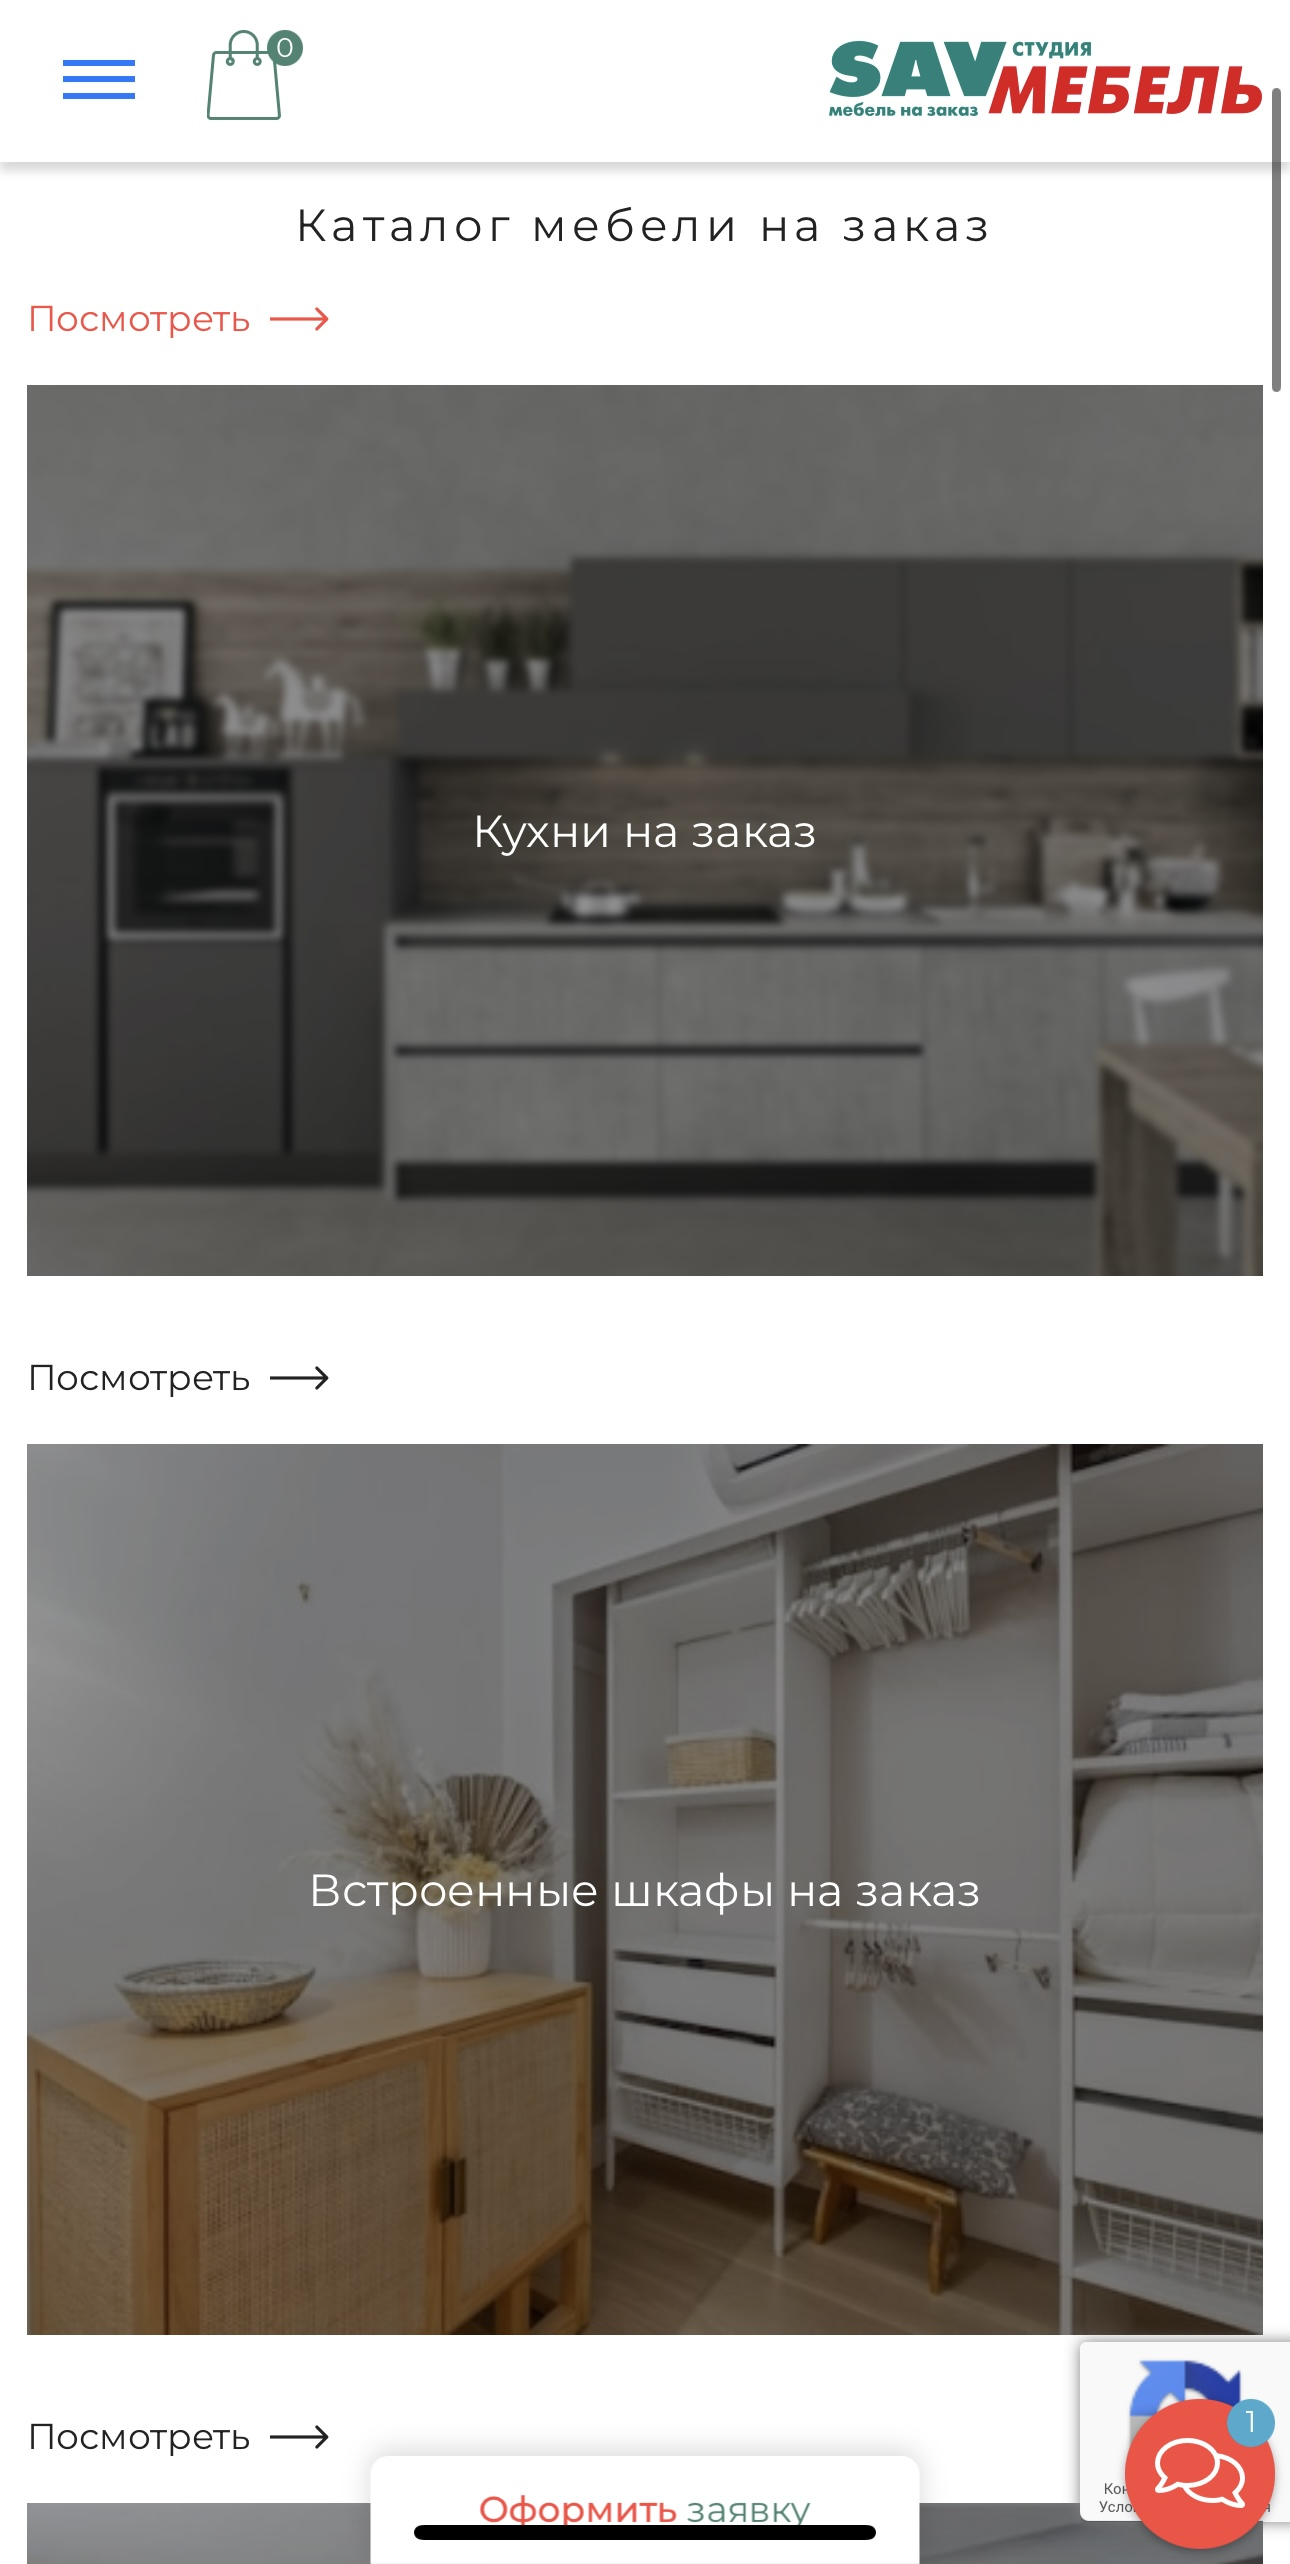 sovremenny-stil.ru / Каталог